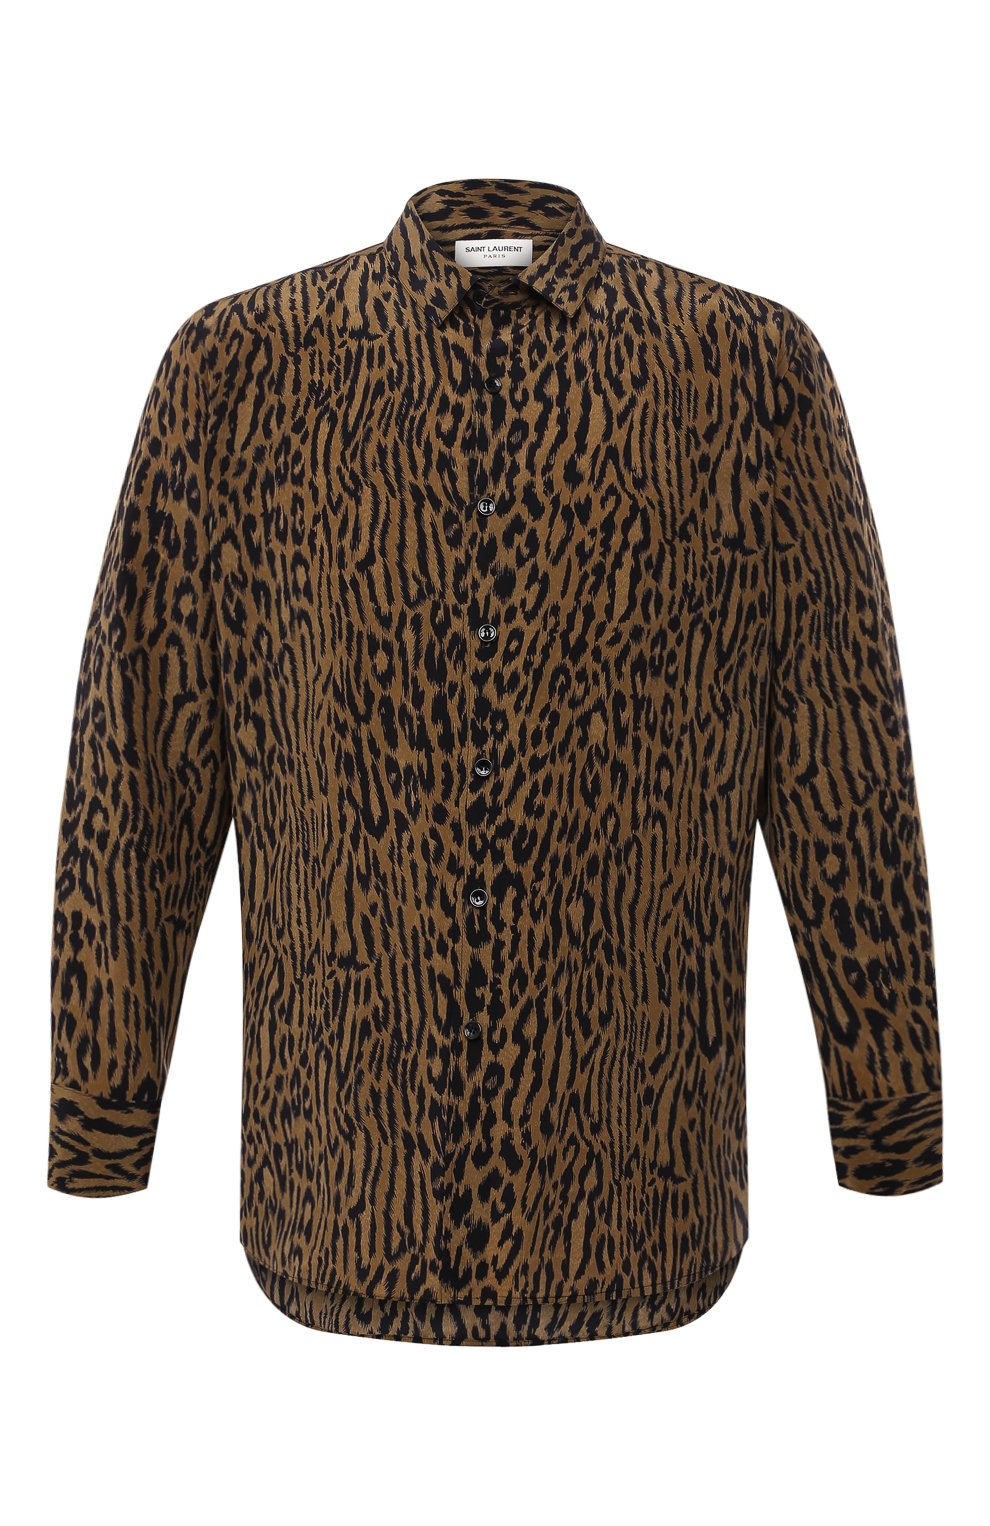 Мужская шелковая рубашка SAINT LAURENT леопардового цвета, арт. 653860/Y1D94 | Фото 1 (Манжеты: На пуговицах; Воротник: Кент; Материал внешний: Шелк; Рукава: Длинные; Стили: Гламурный; Рубашки М: Regular Fit; Случай: Повседневный; Длина (для топов): Стандартные; Принт: С принтом)